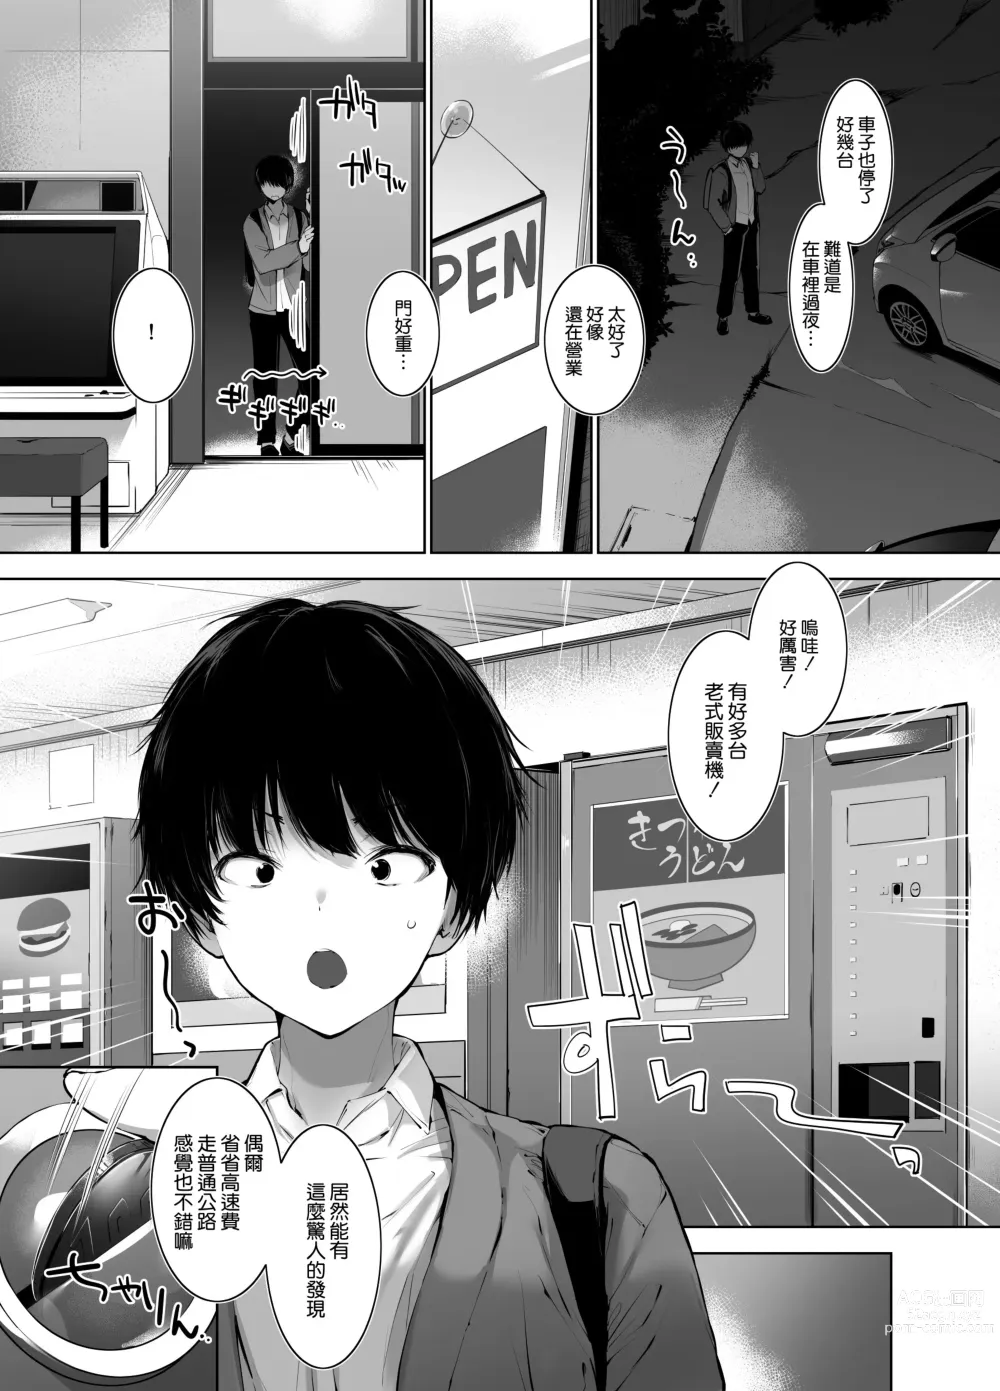 Page 4 of doujinshi 美人母娘が経営するドライブインの秘密のおもてなしが過激すぎる